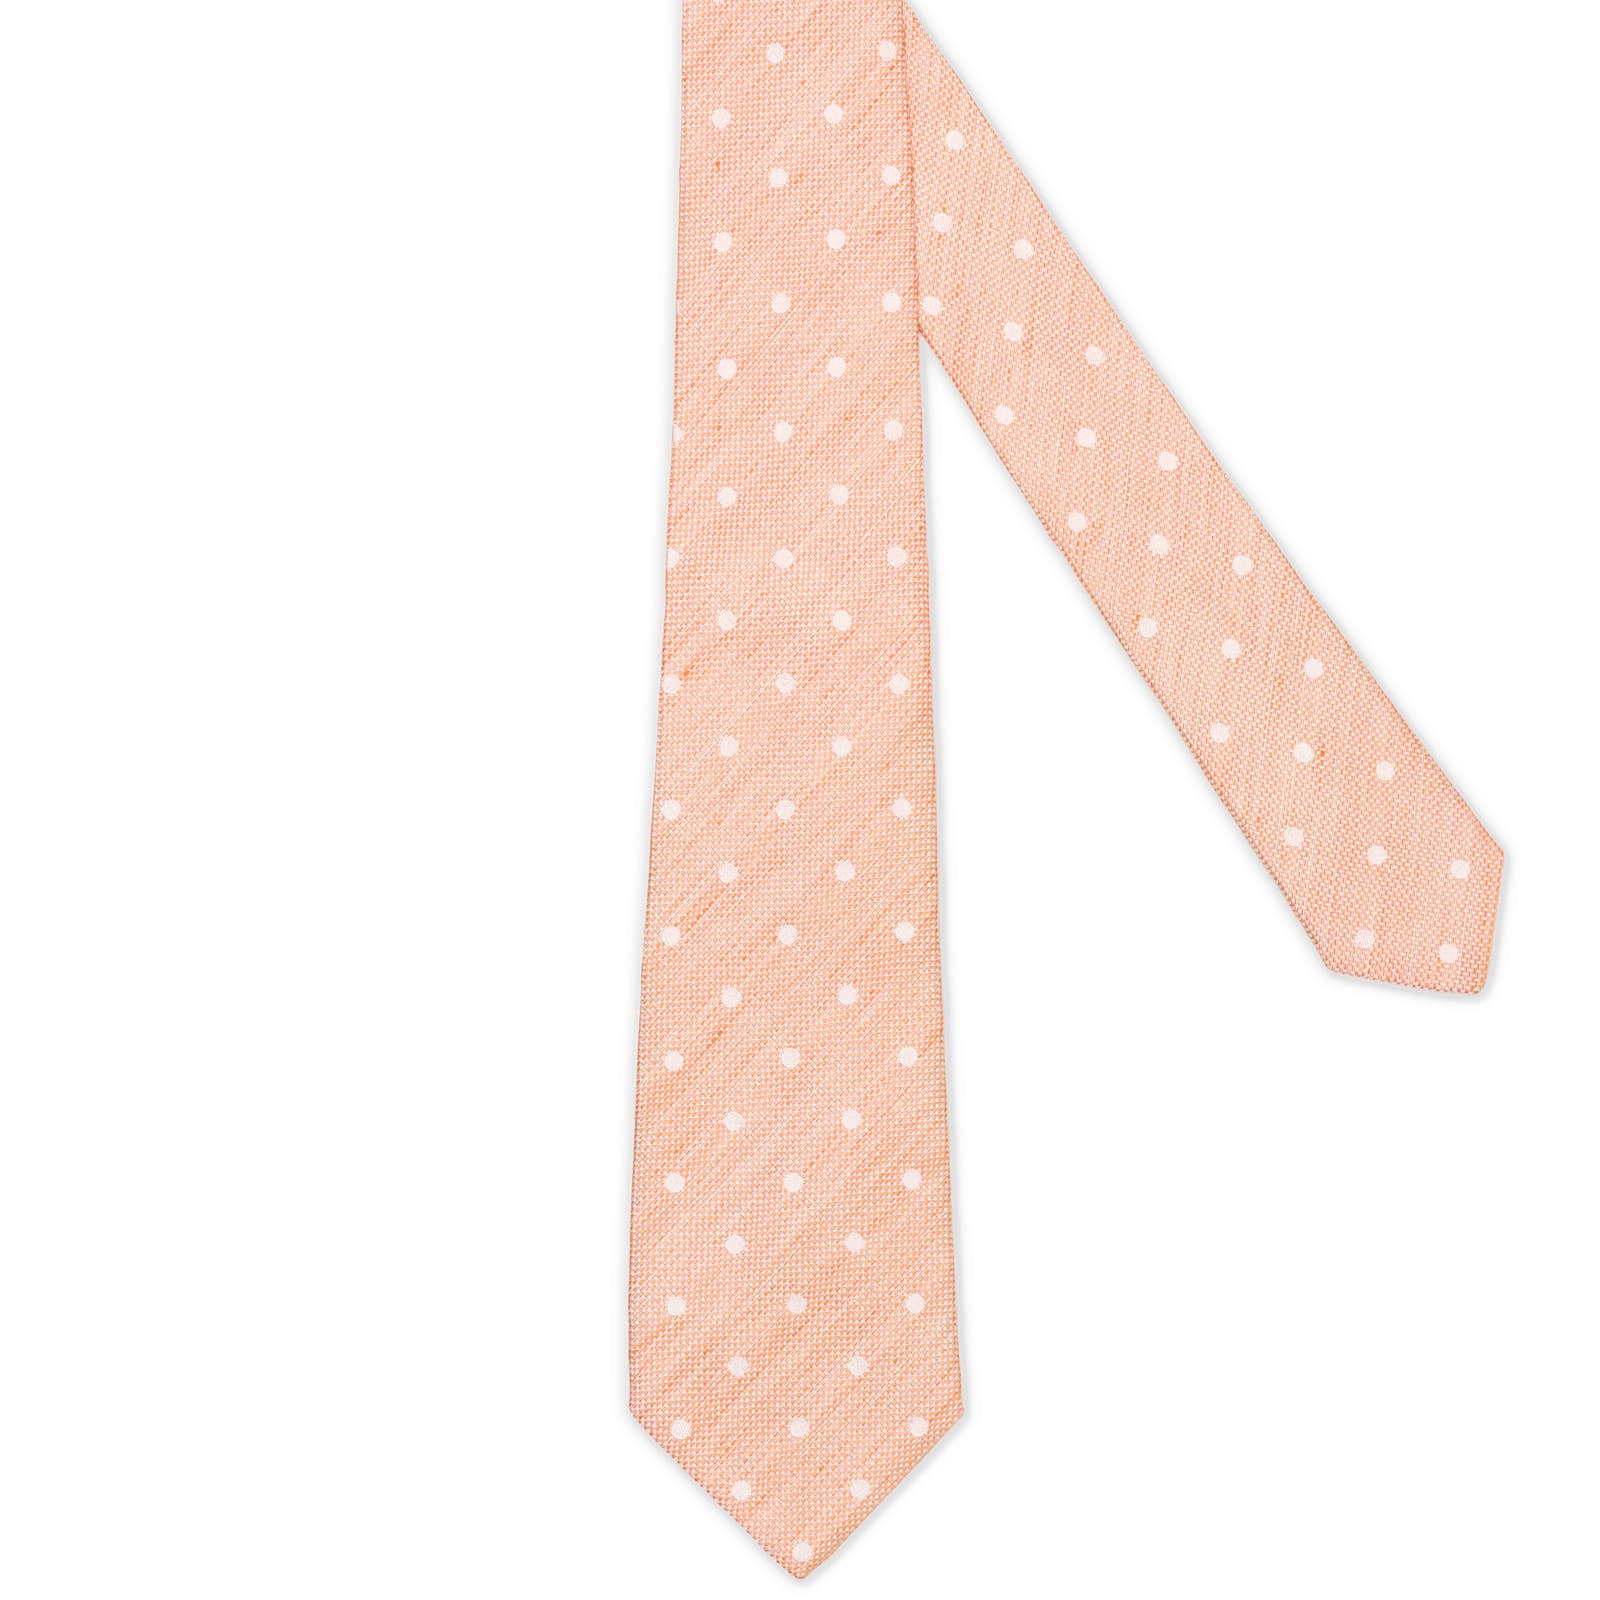 MATTABISCH for VANNUCCI Orange Polka Dot Silk - Linen Tie NEW